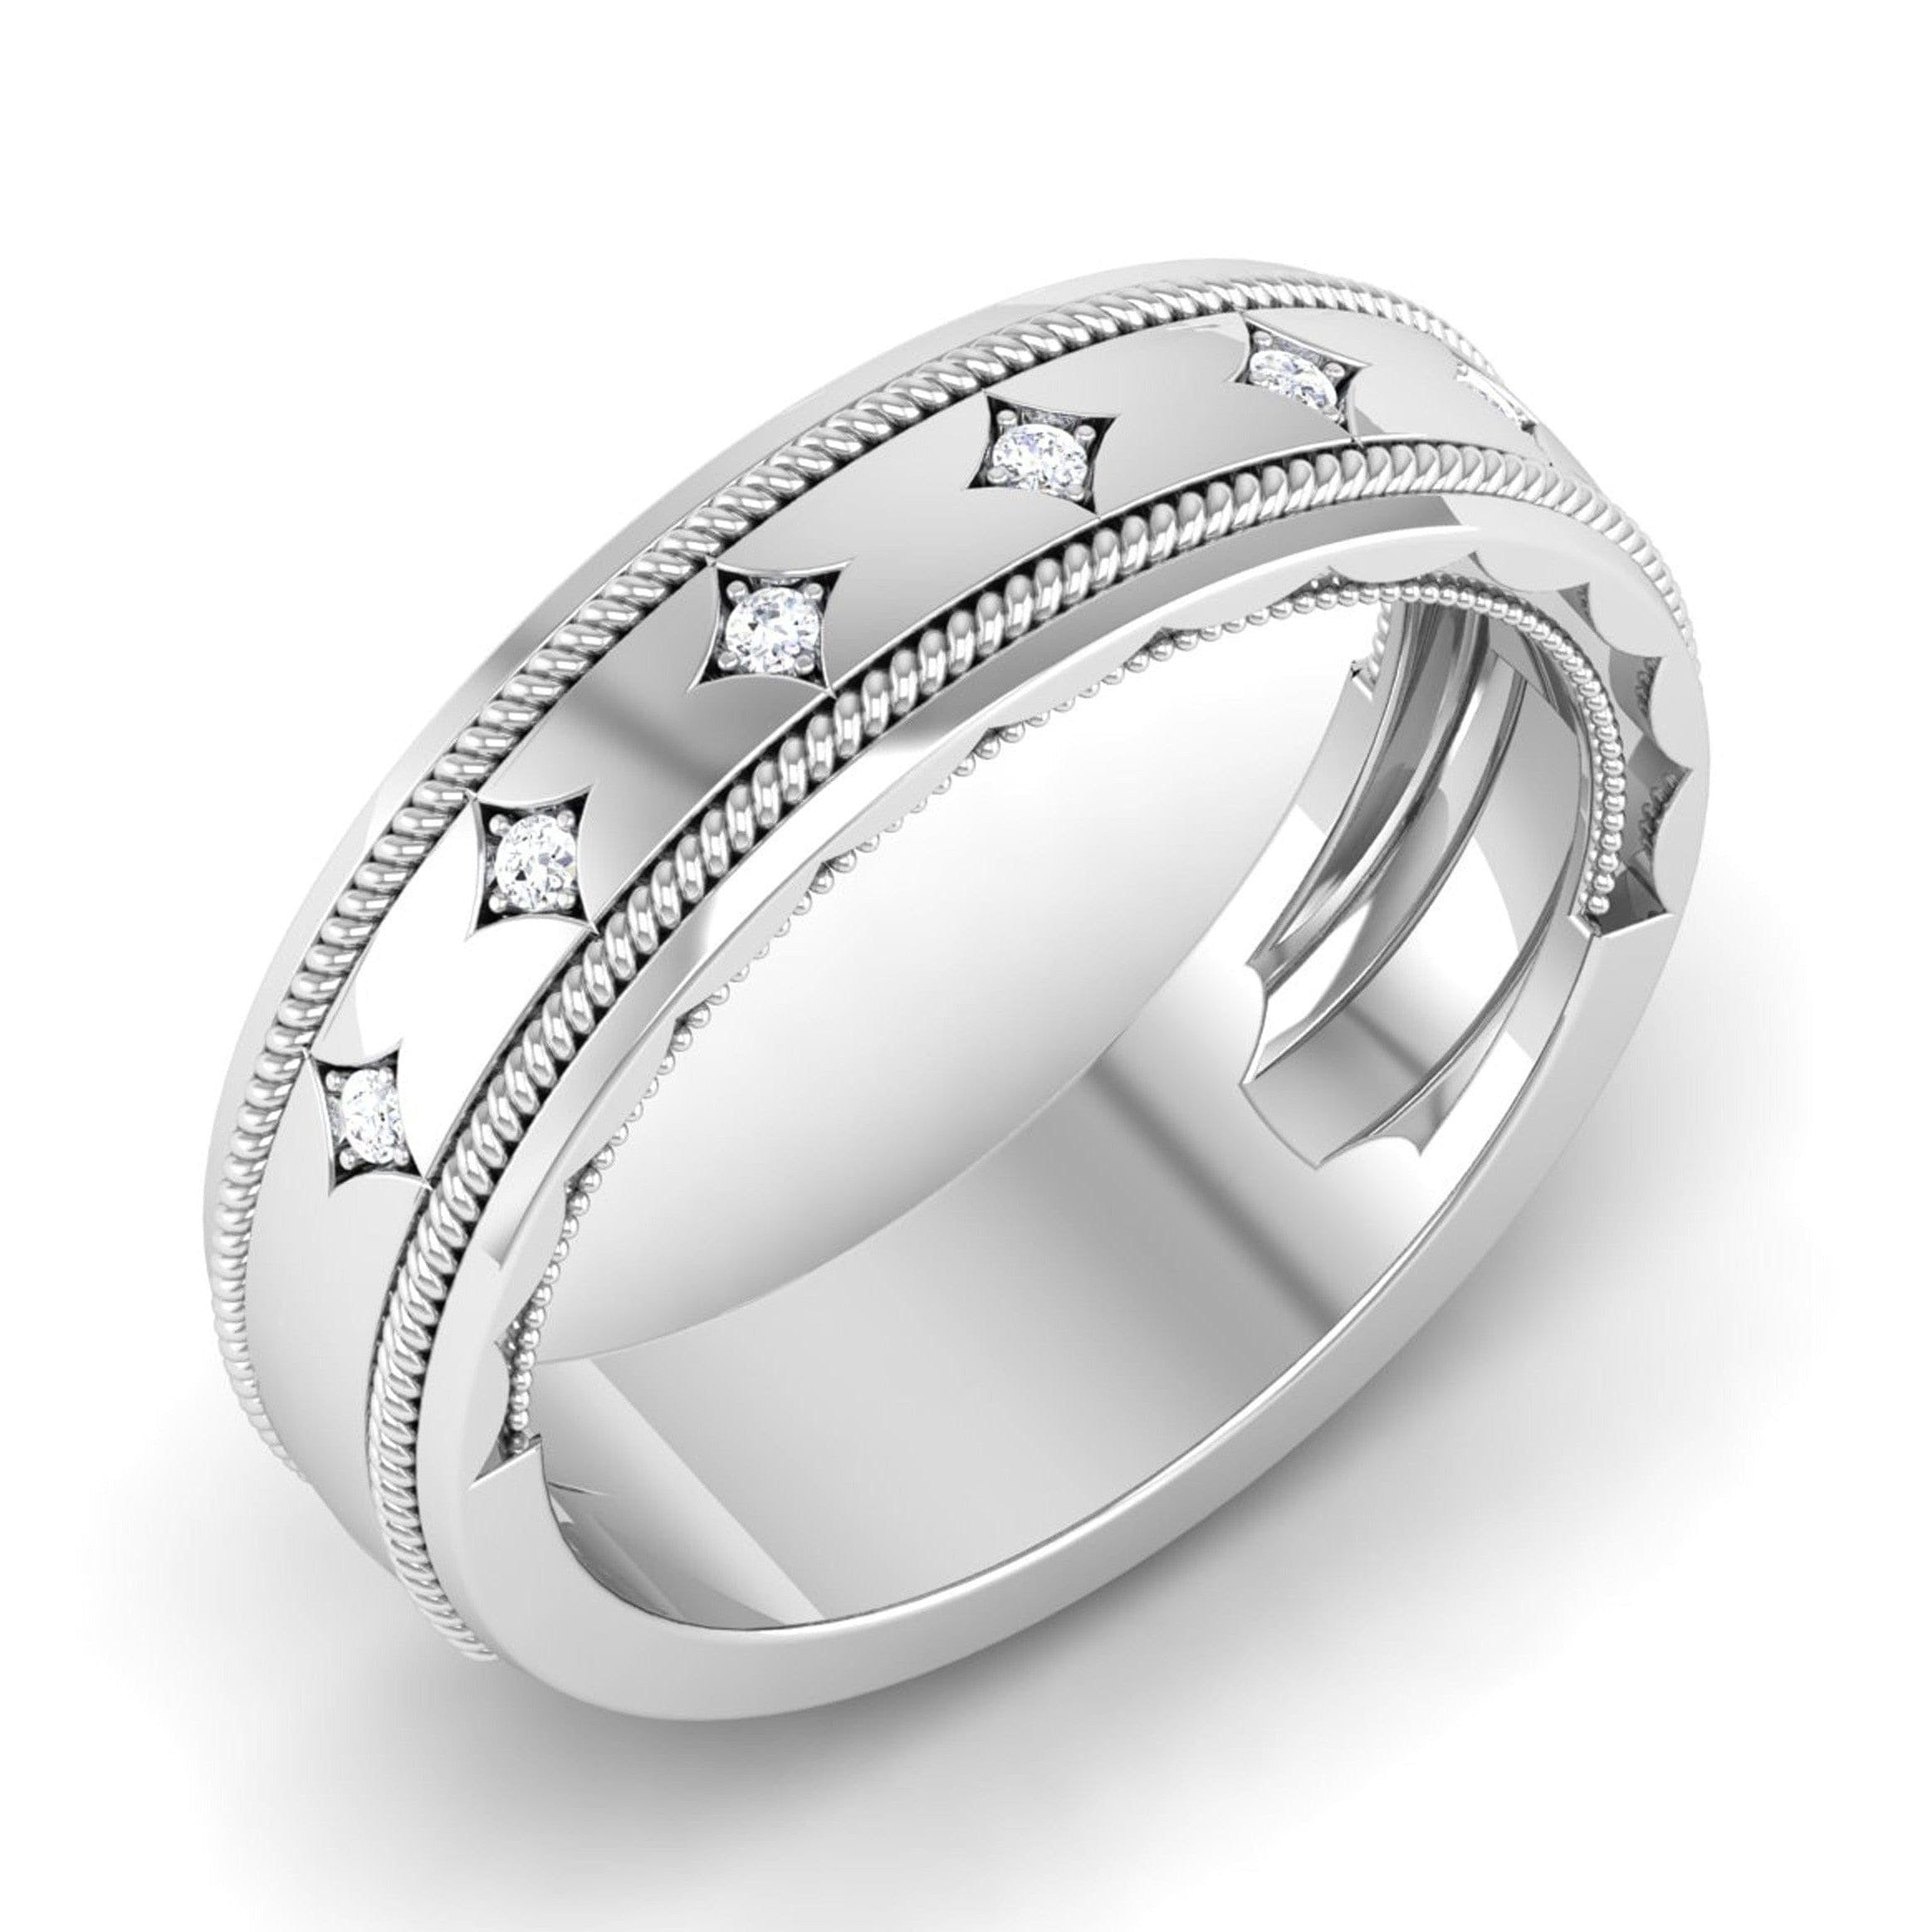 Designer Men's Platinum Wedding Ring with Diamonds JL PT 6742